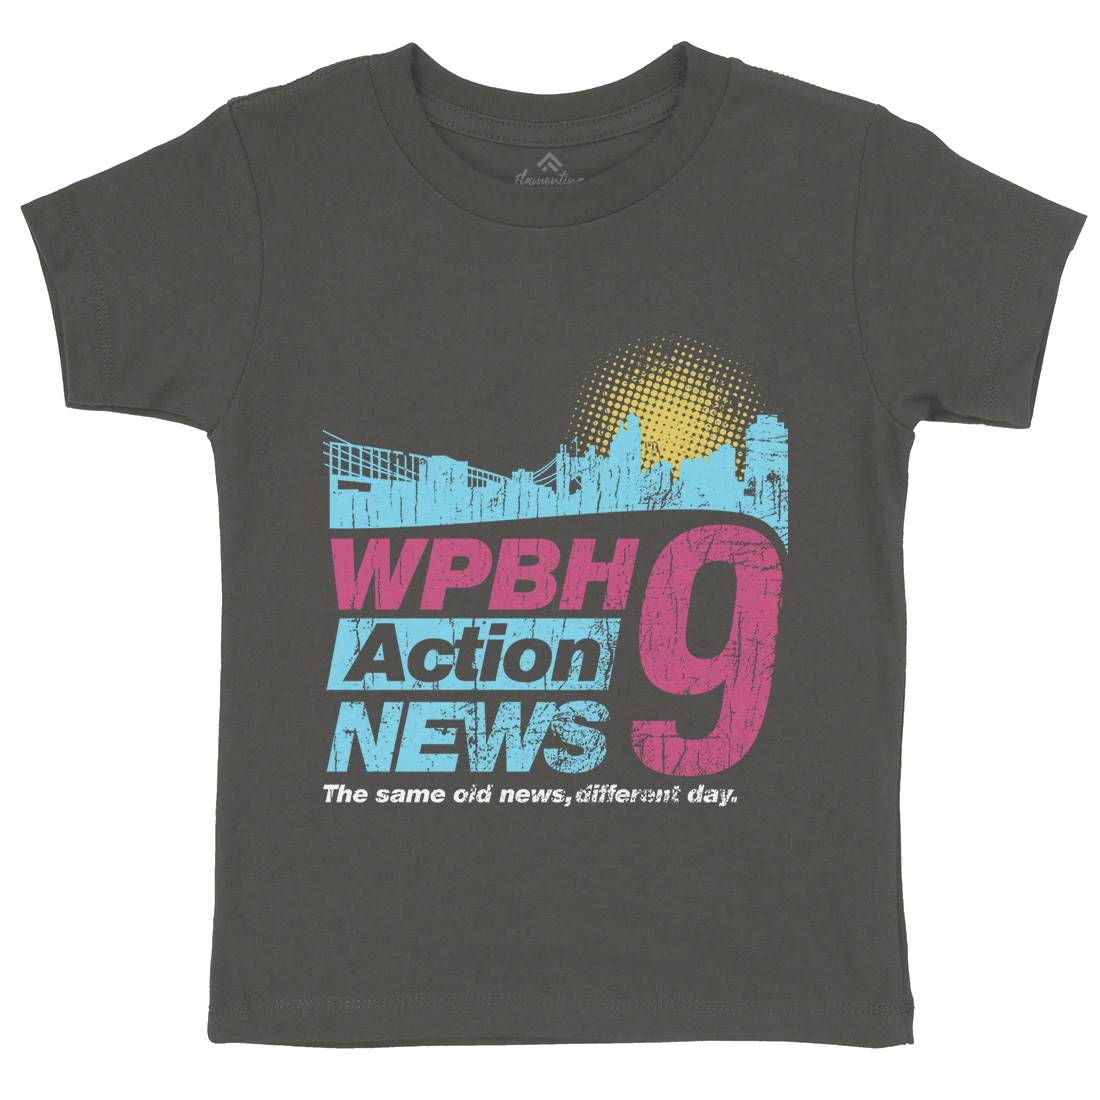 Wpbh Action Kids Crew Neck T-Shirt Retro D342